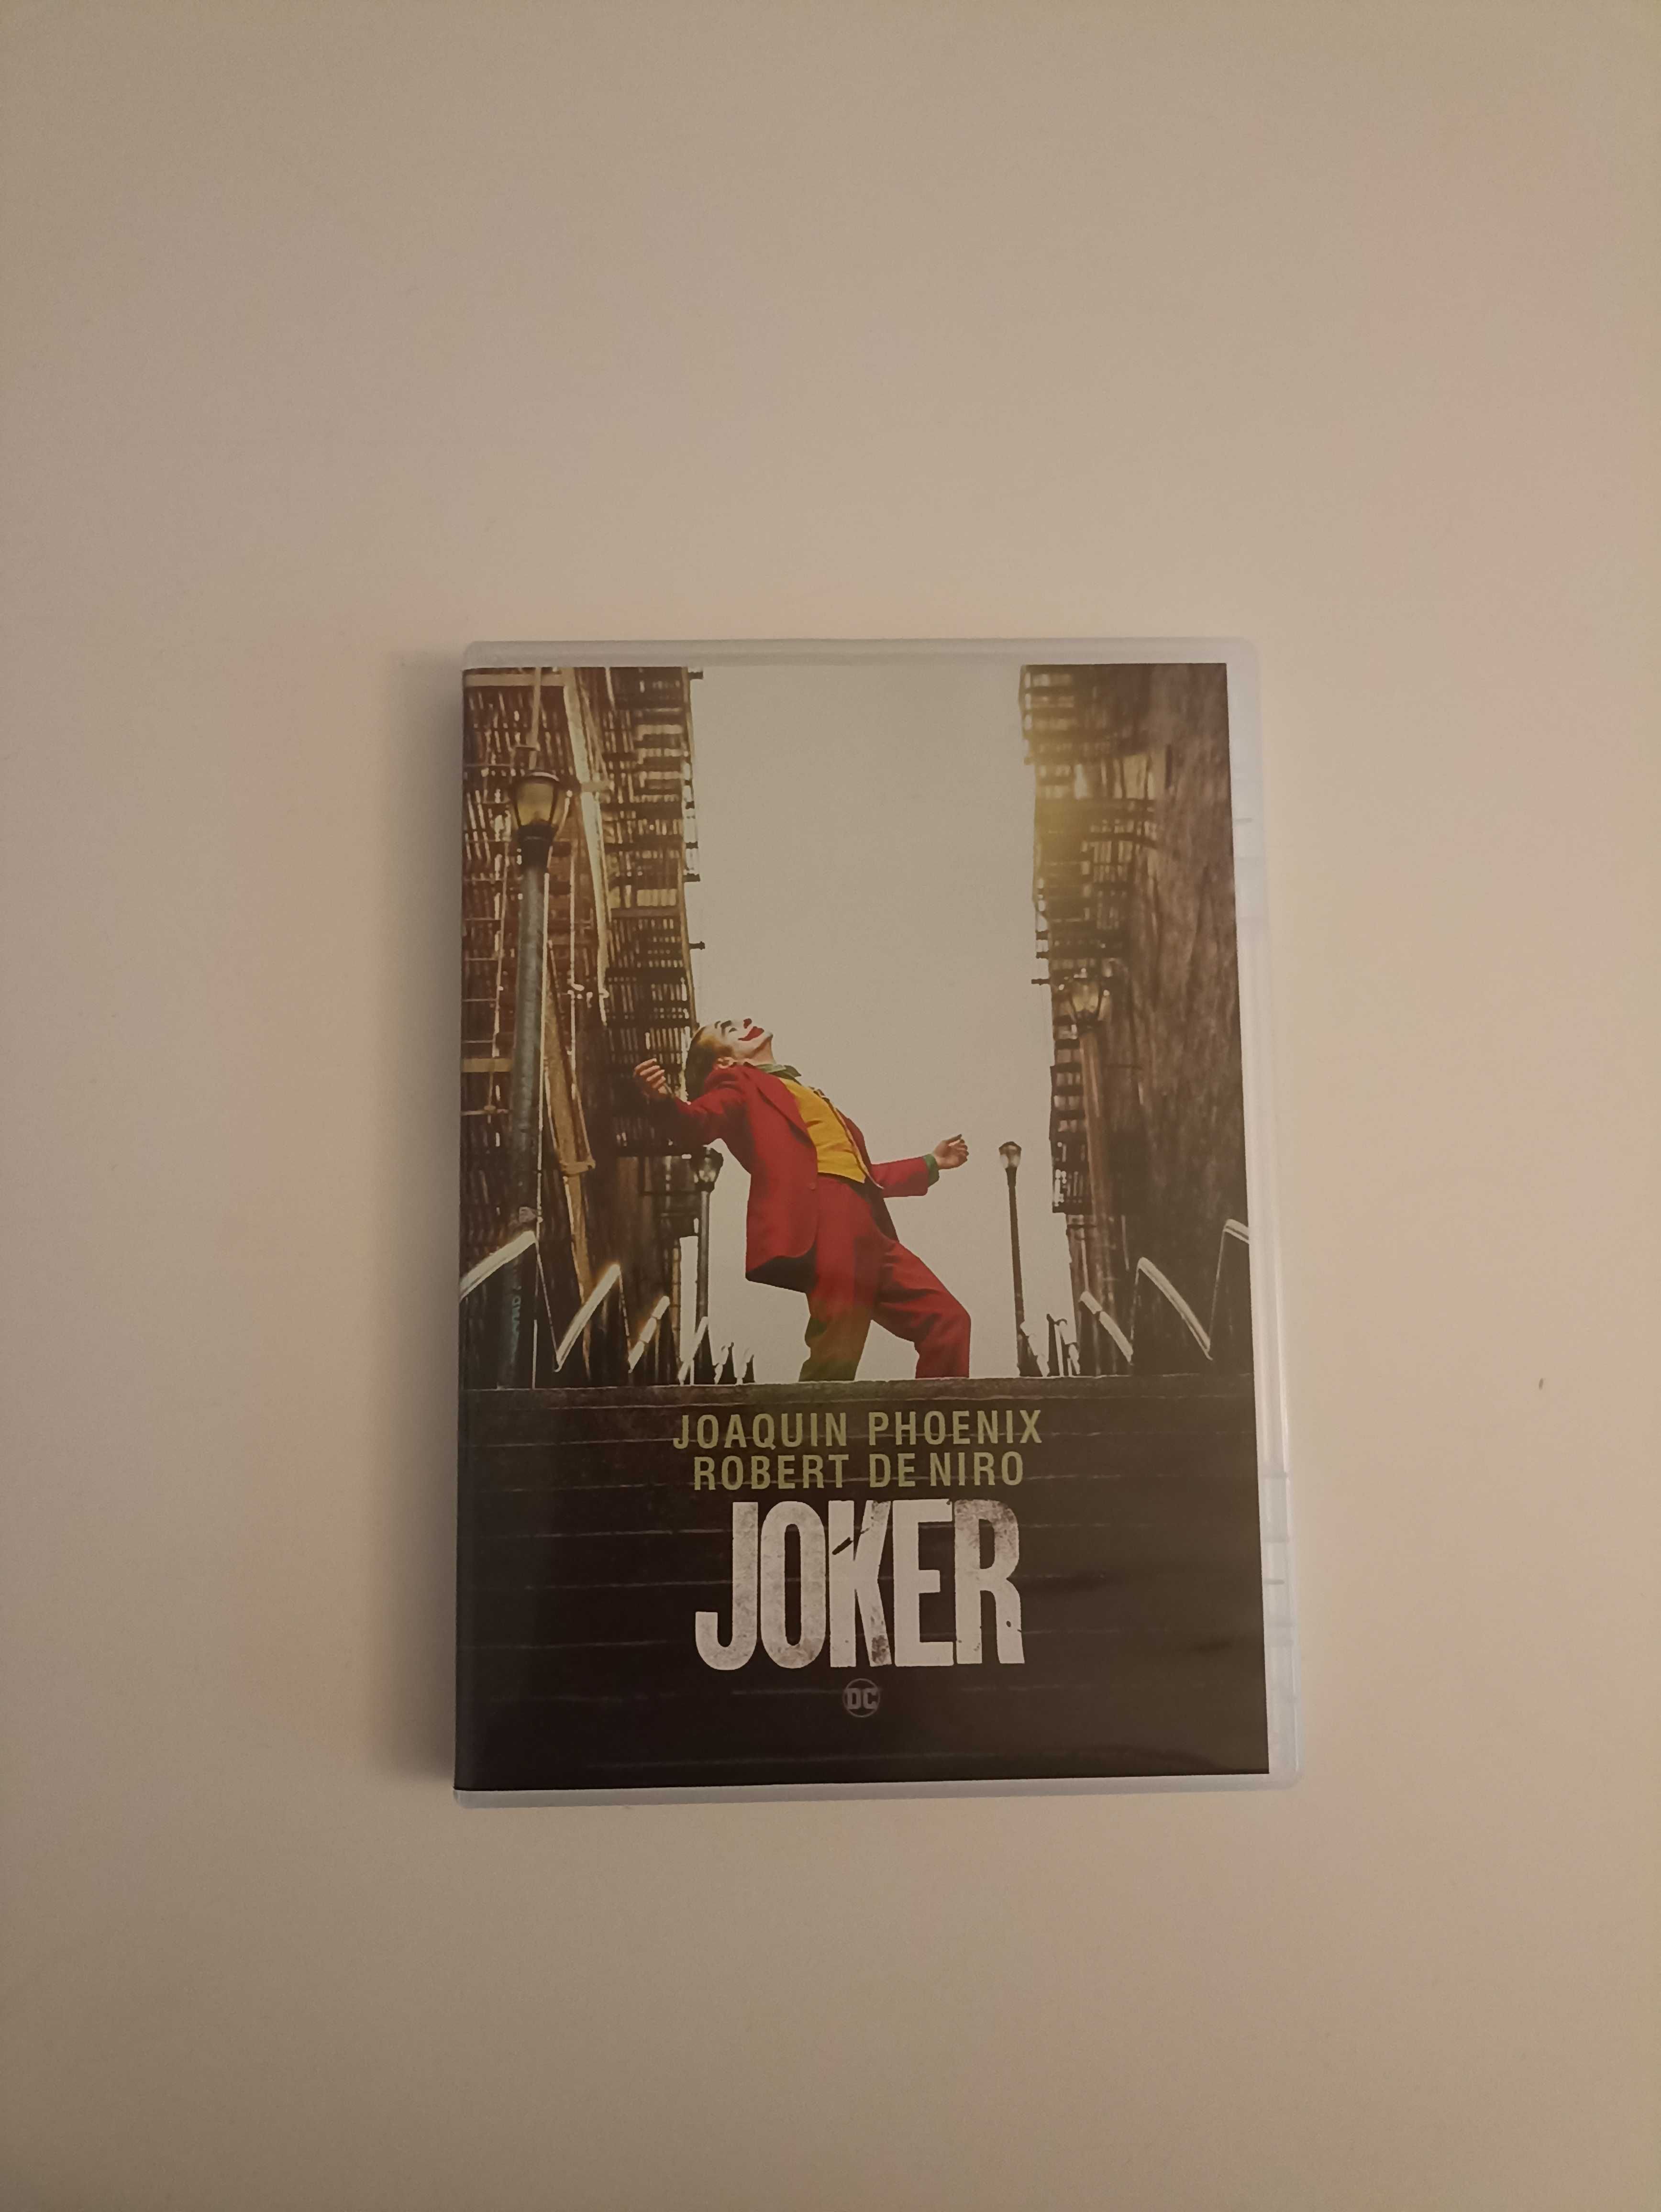 Joker - Film DVD